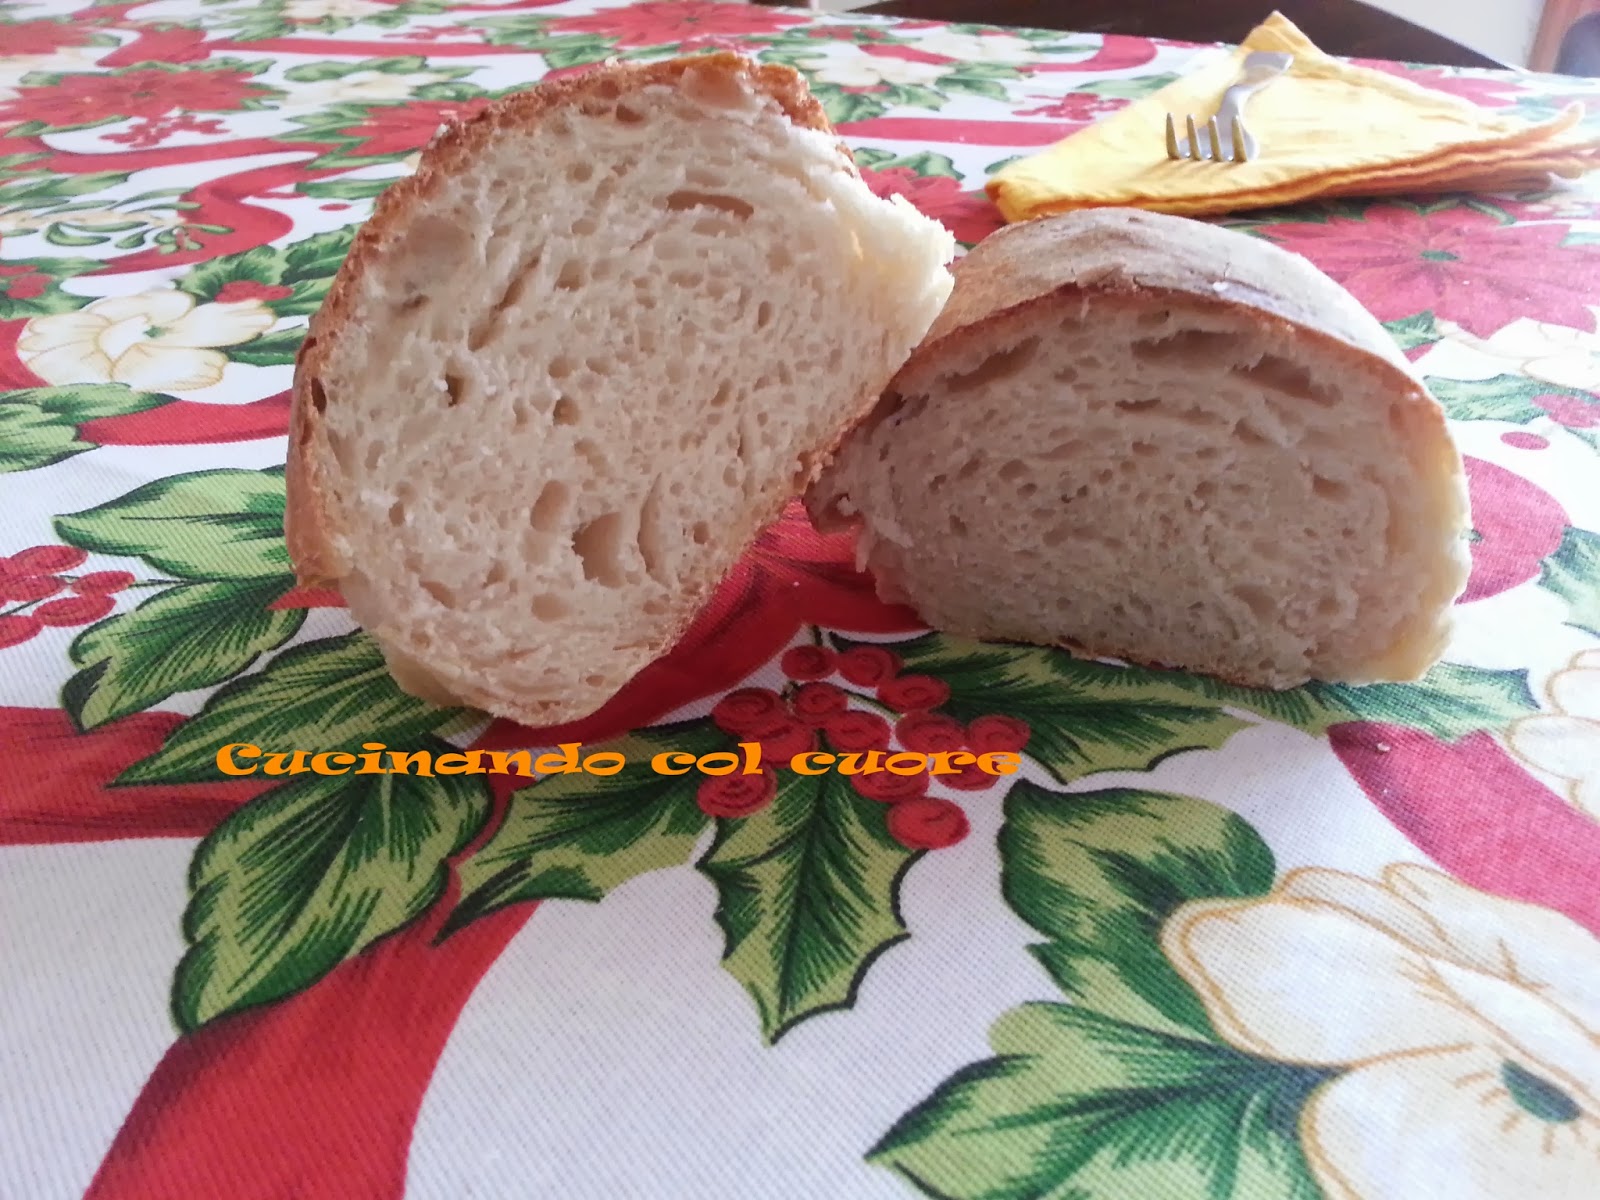 Pane semplice con pasta madre